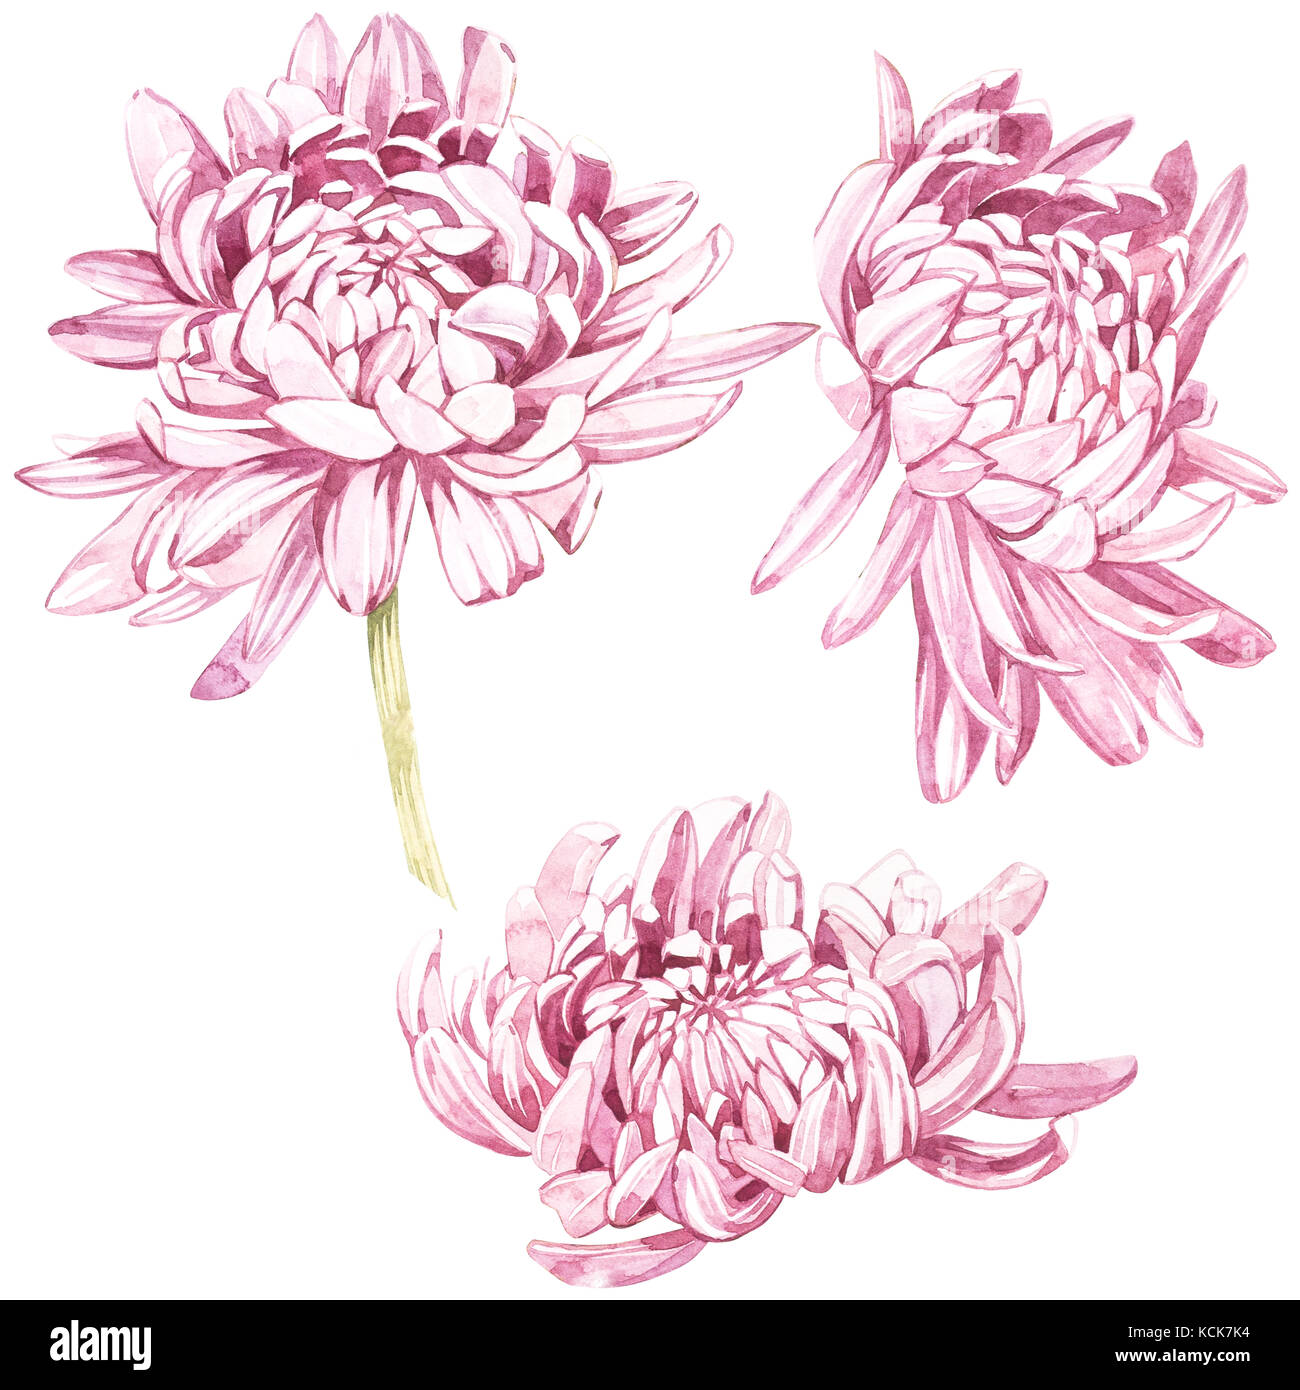 Chrysanthemum Watercolor Sketchbook Handbook Travel Journal Watercolor  Painting Watercolor Paper 